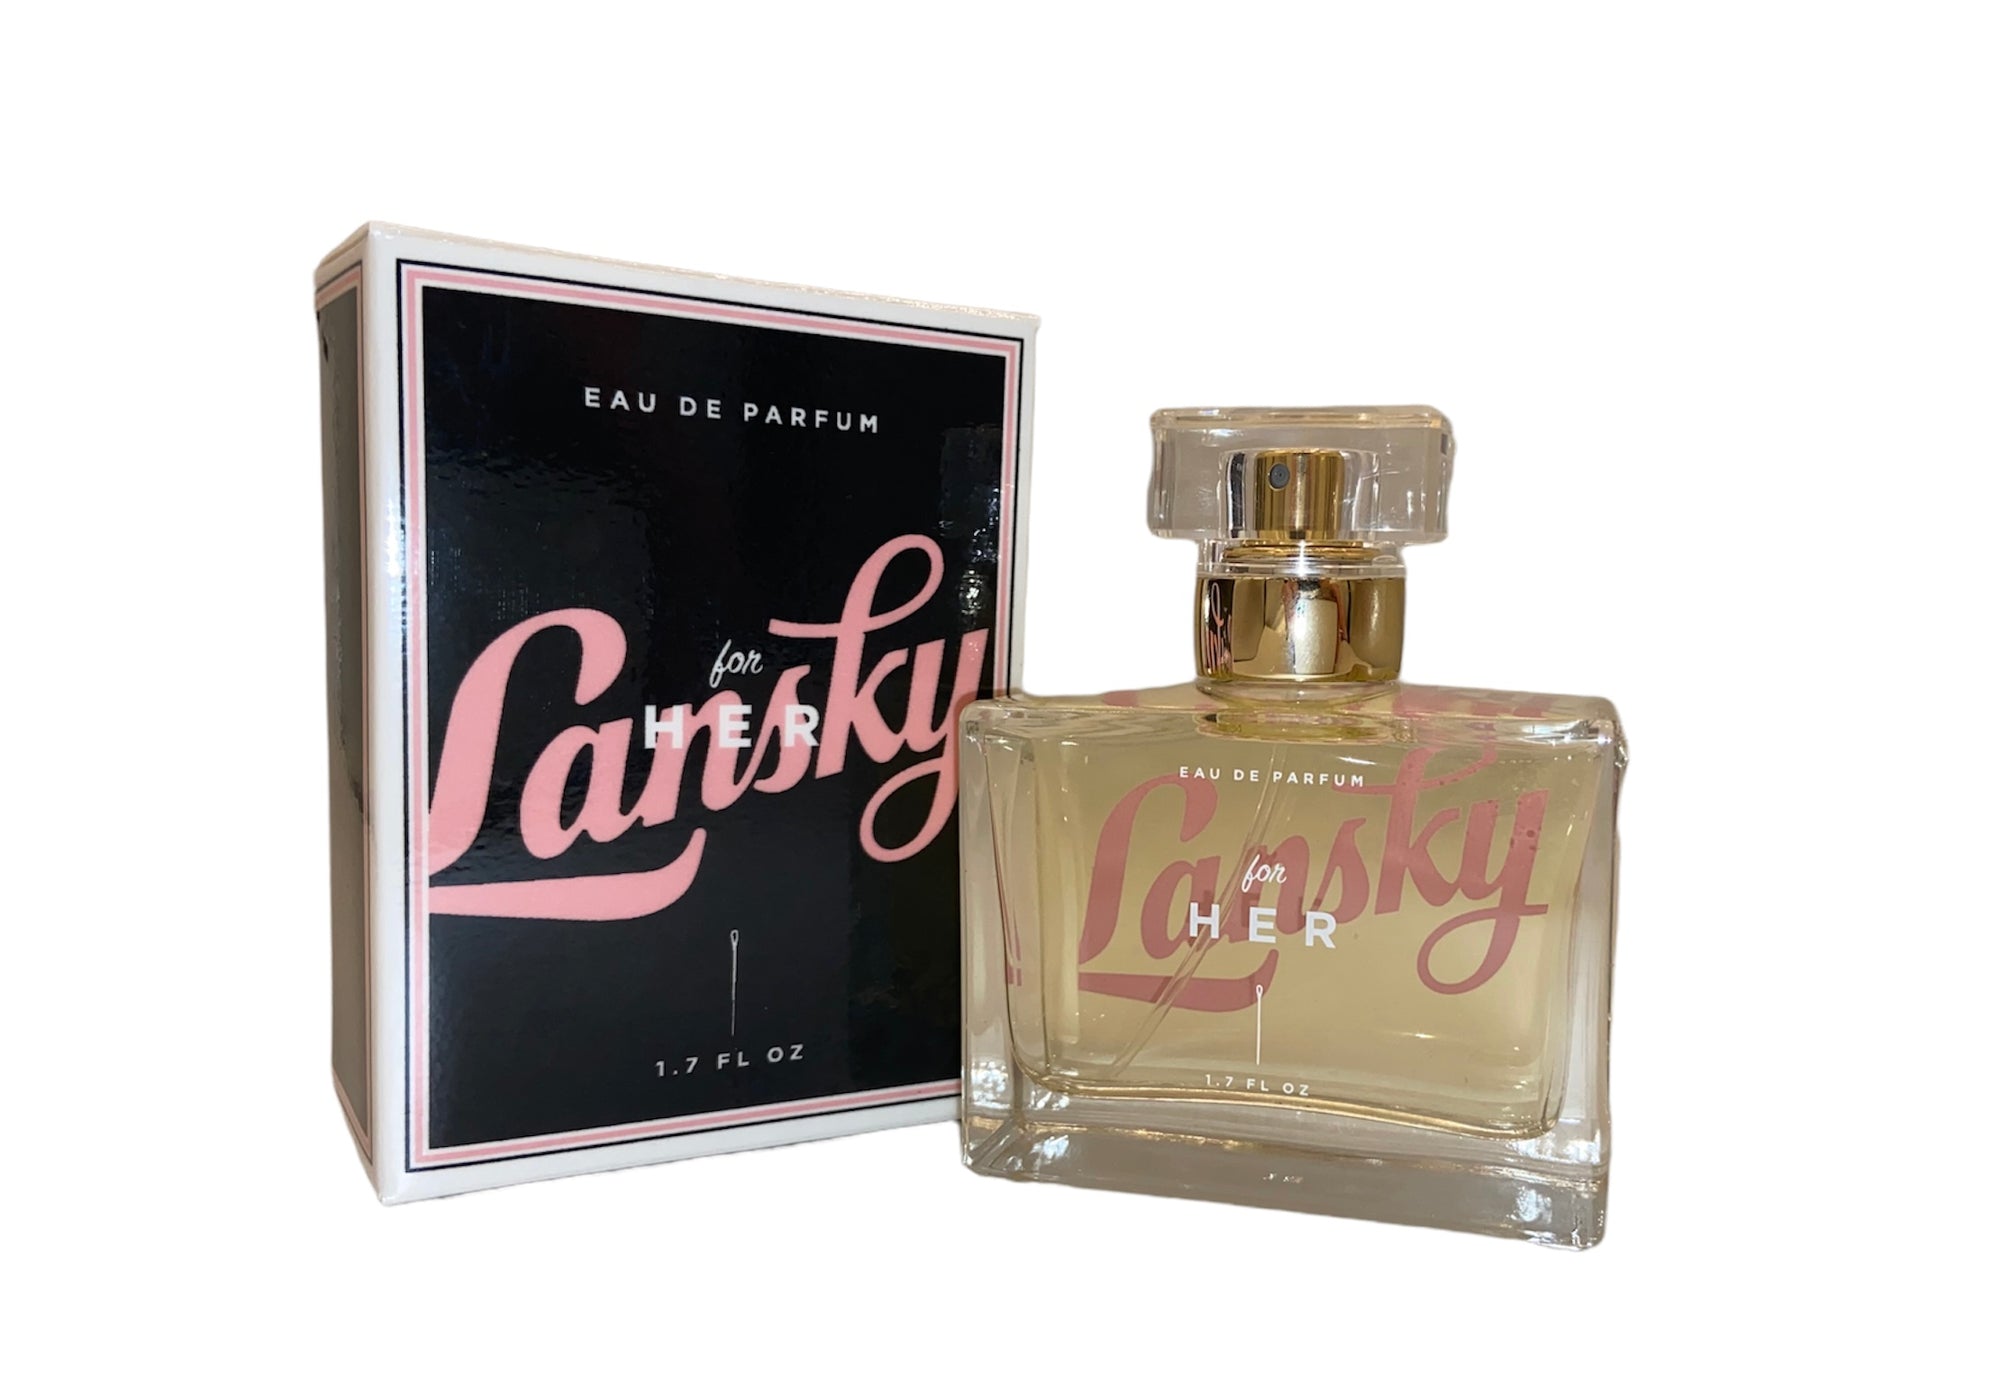 Lansky for Her Eau de Parfum